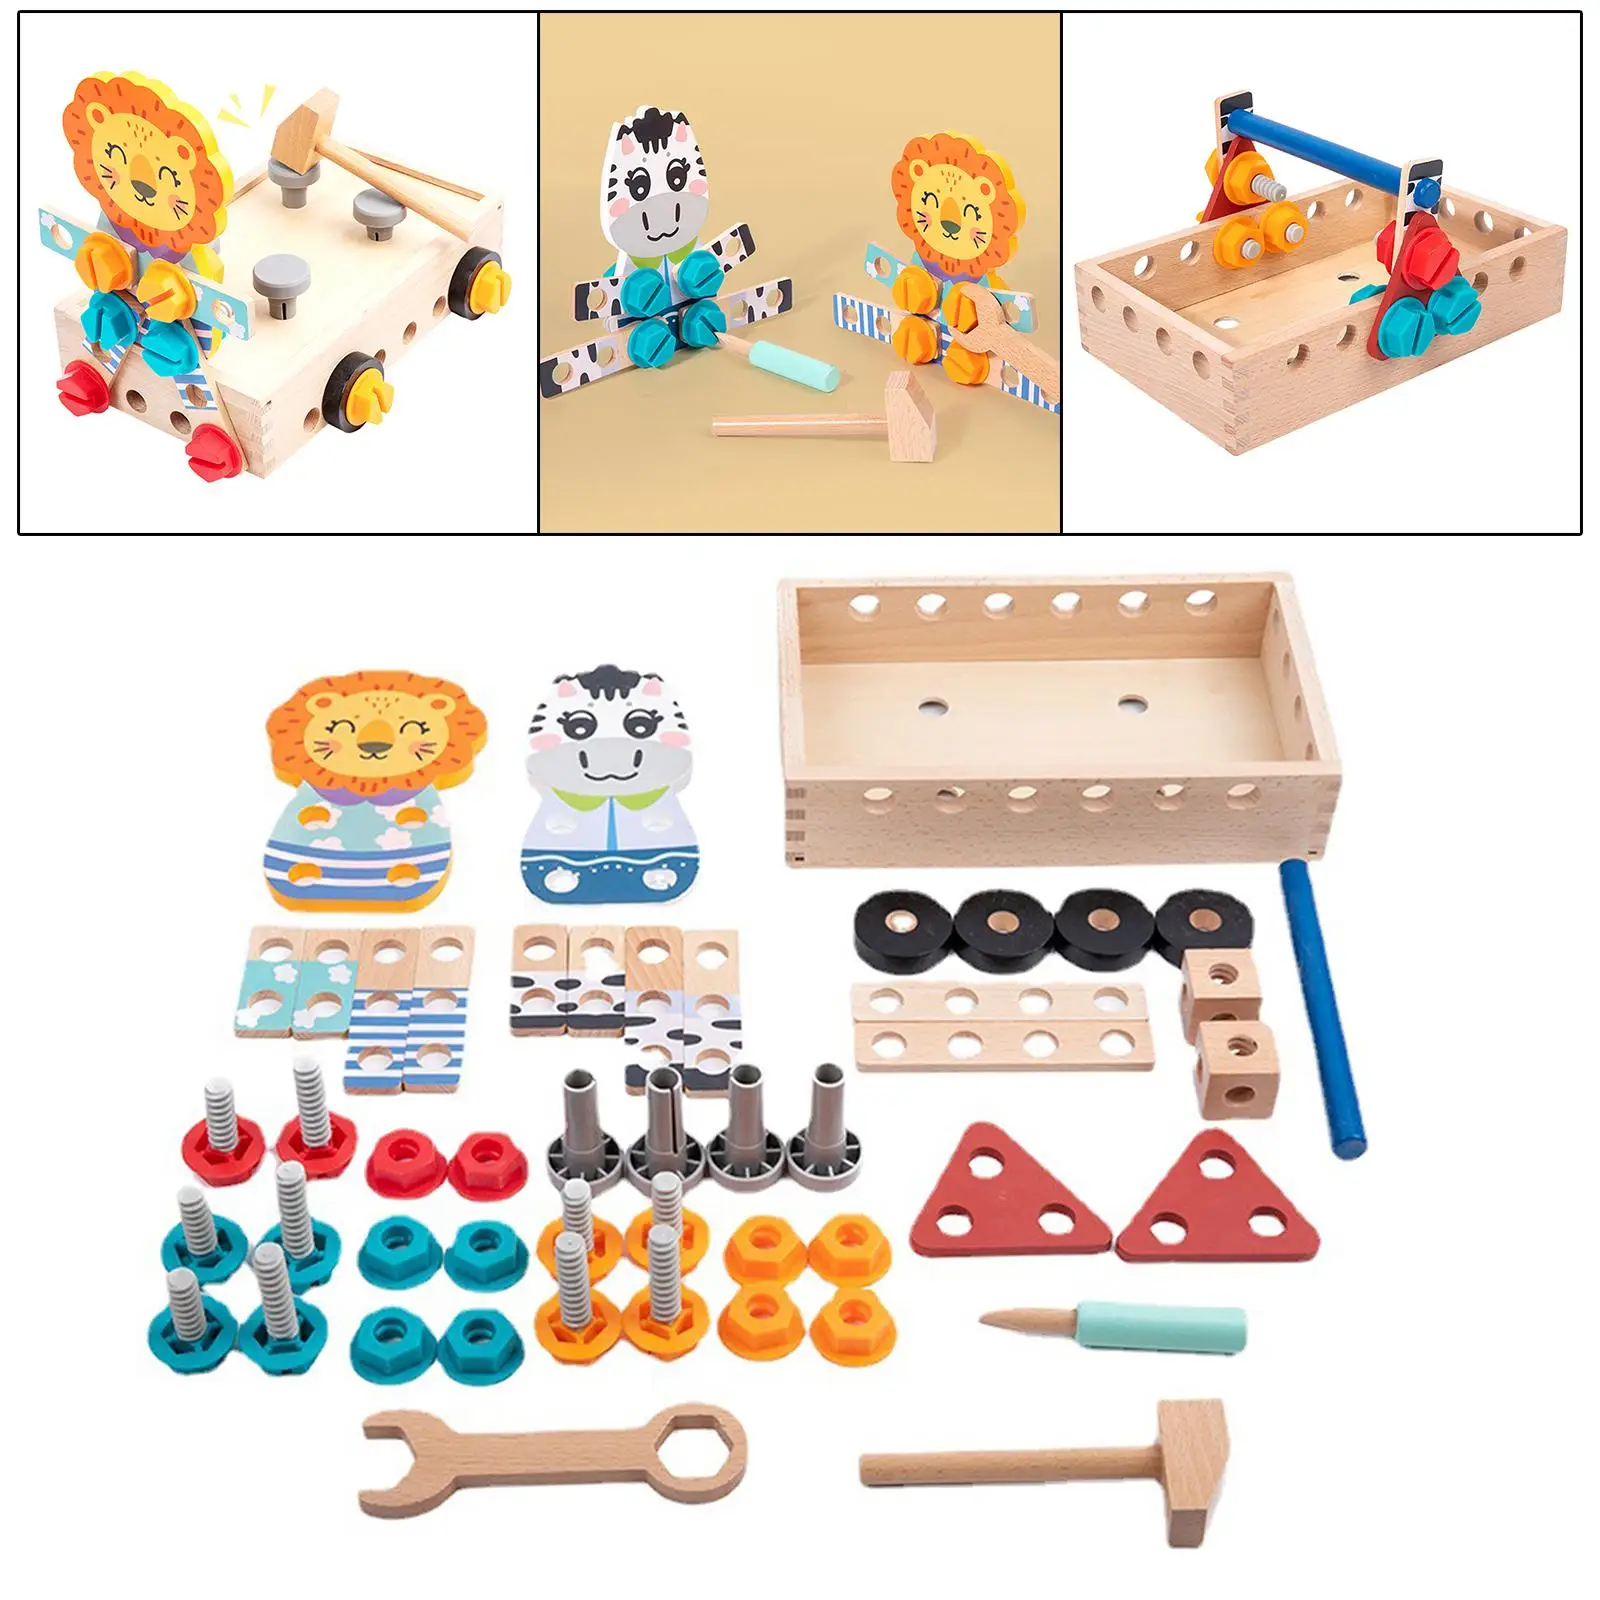 Construction building Toolbox Set for Preschool Activities Outdoor